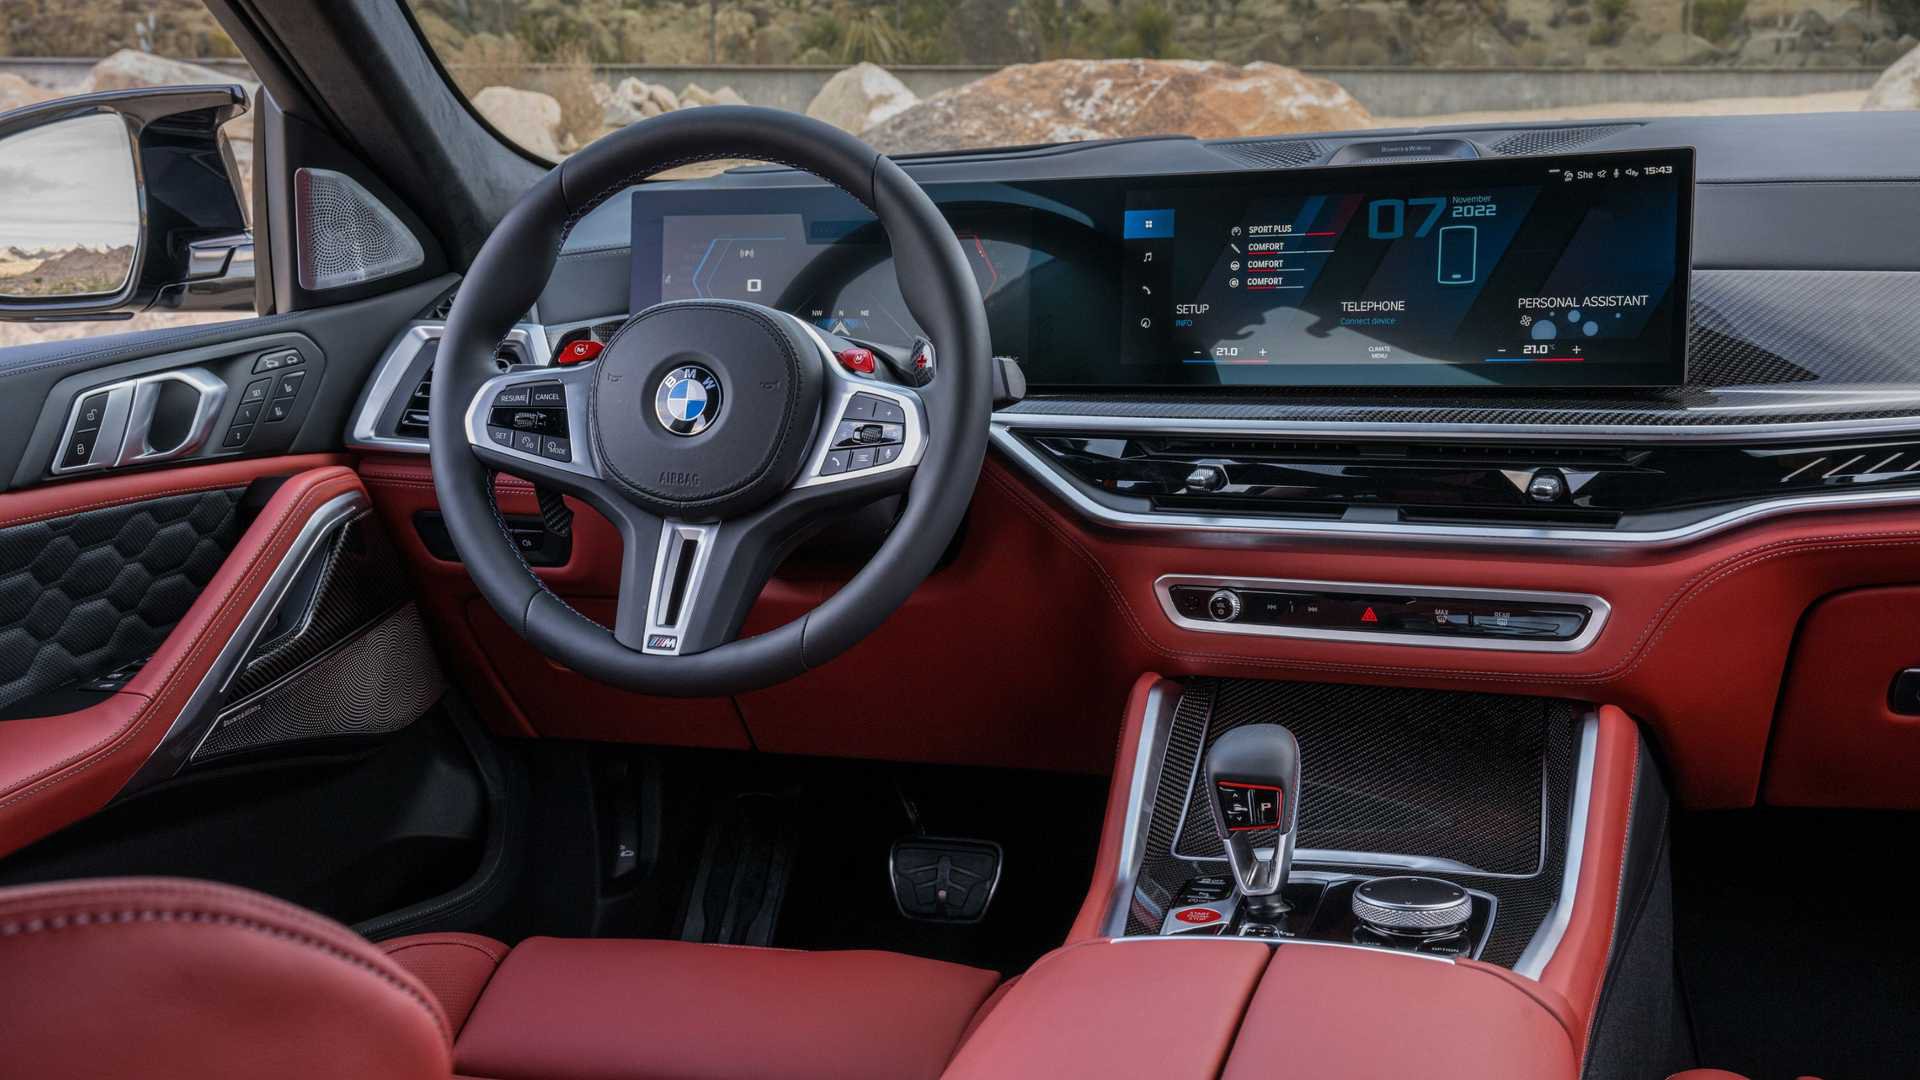 BMW lança novos X5 e X6 no Brasil Automotive Business